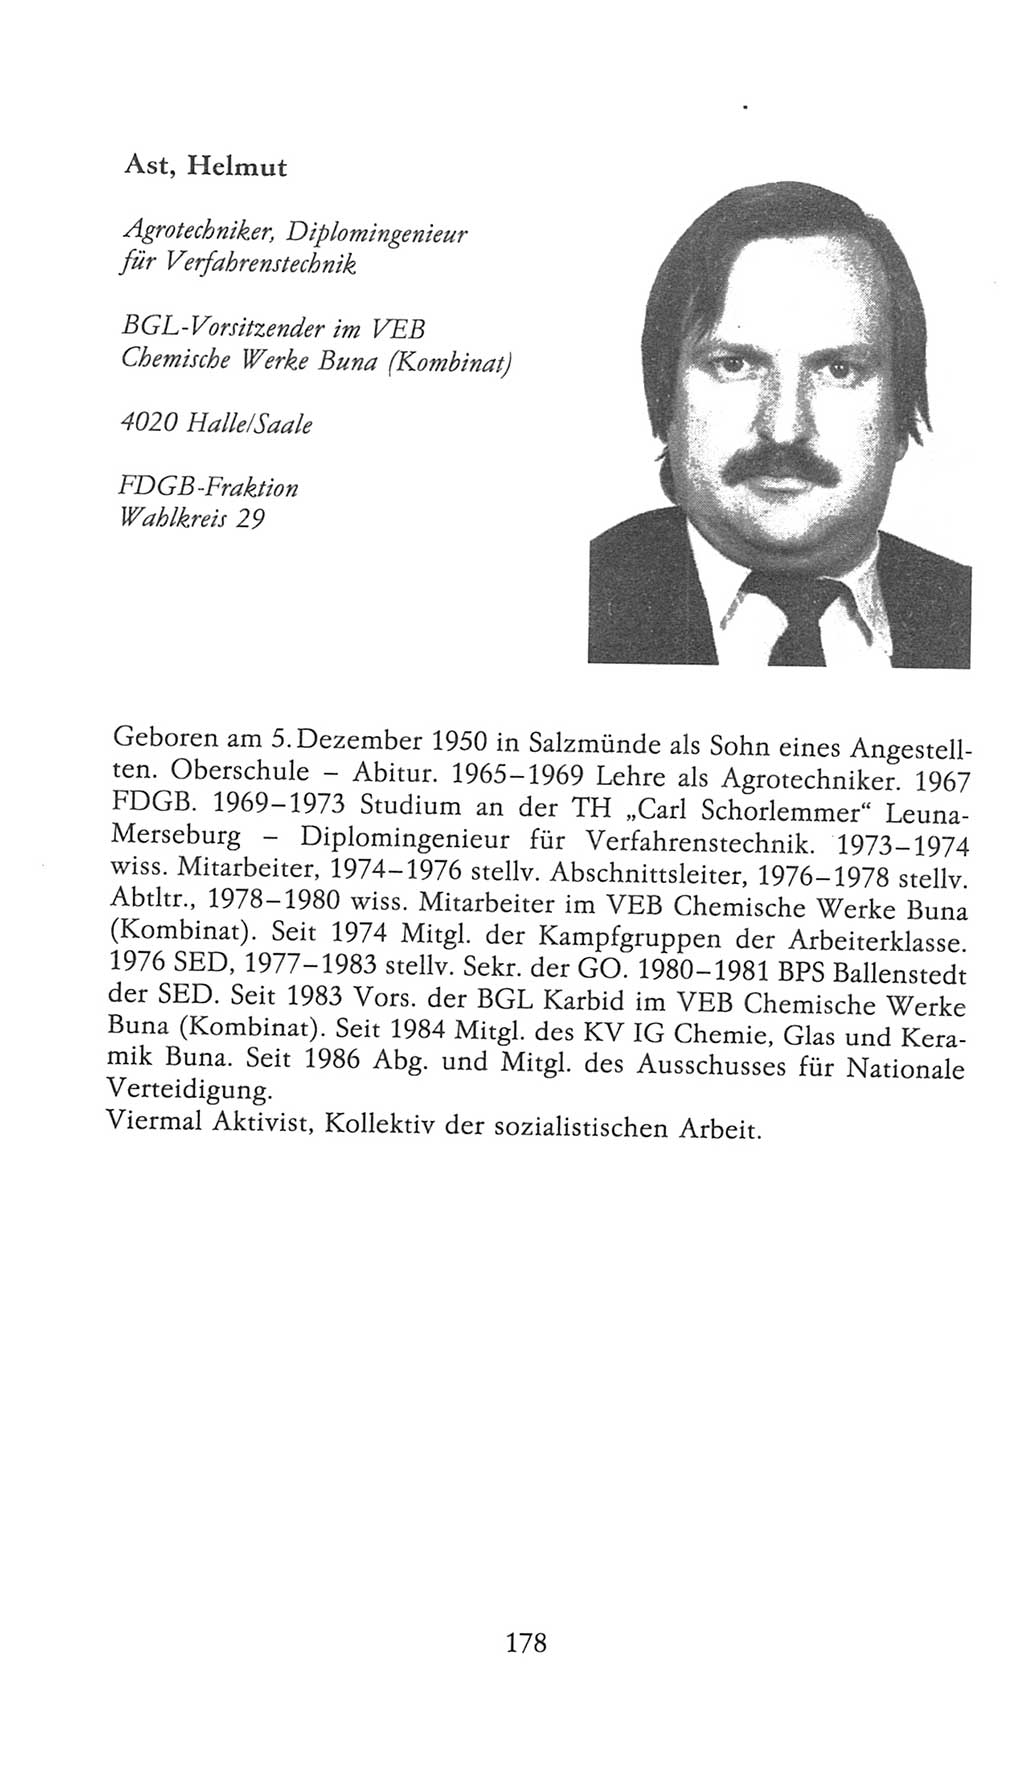 Volkskammer (VK) der Deutschen Demokratischen Republik (DDR), 9. Wahlperiode 1986-1990, Seite 178 (VK. DDR 9. WP. 1986-1990, S. 178)